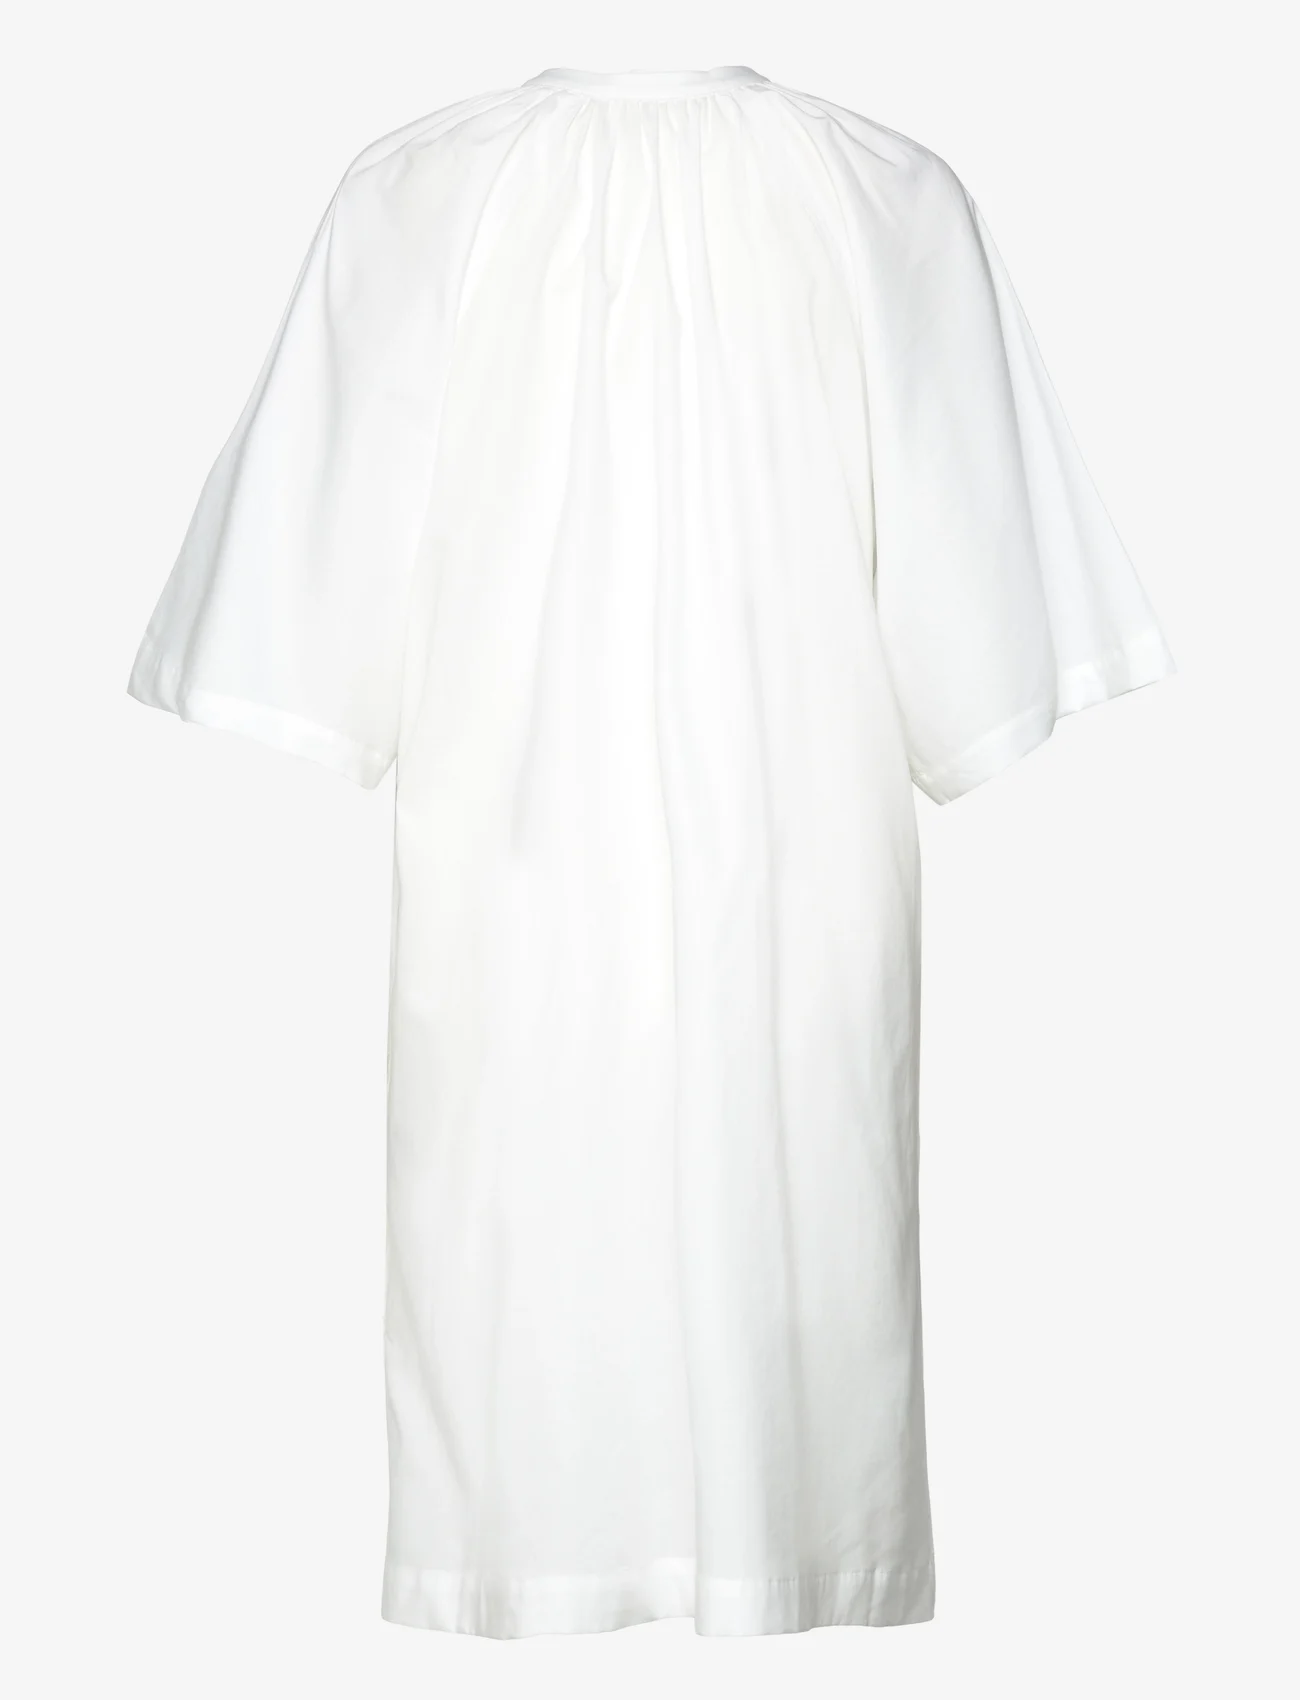 RODEBJER - RODEBJER IVY - marškinių tipo suknelės - white - 1